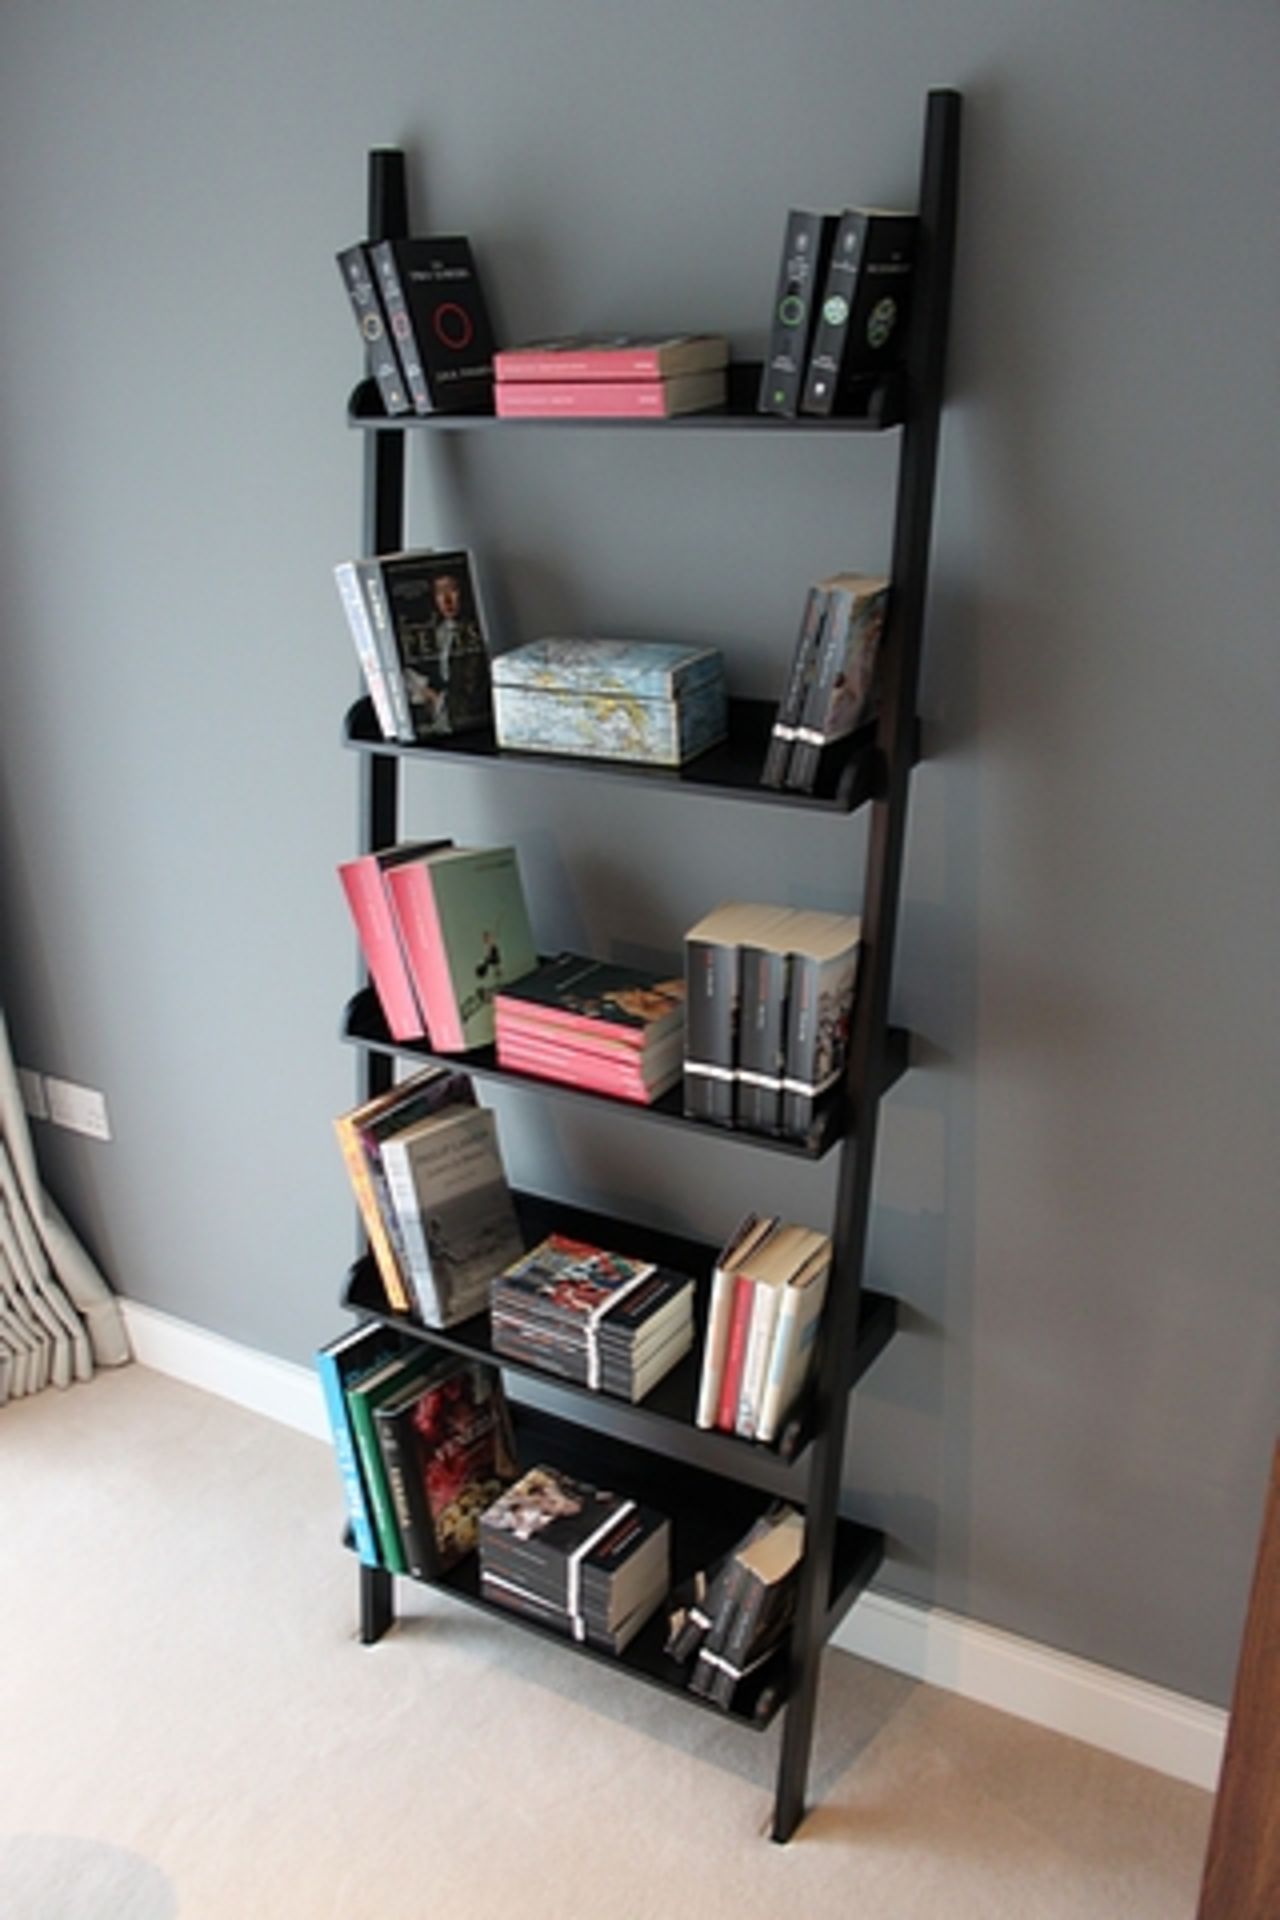 A modern five shelf bookshelf